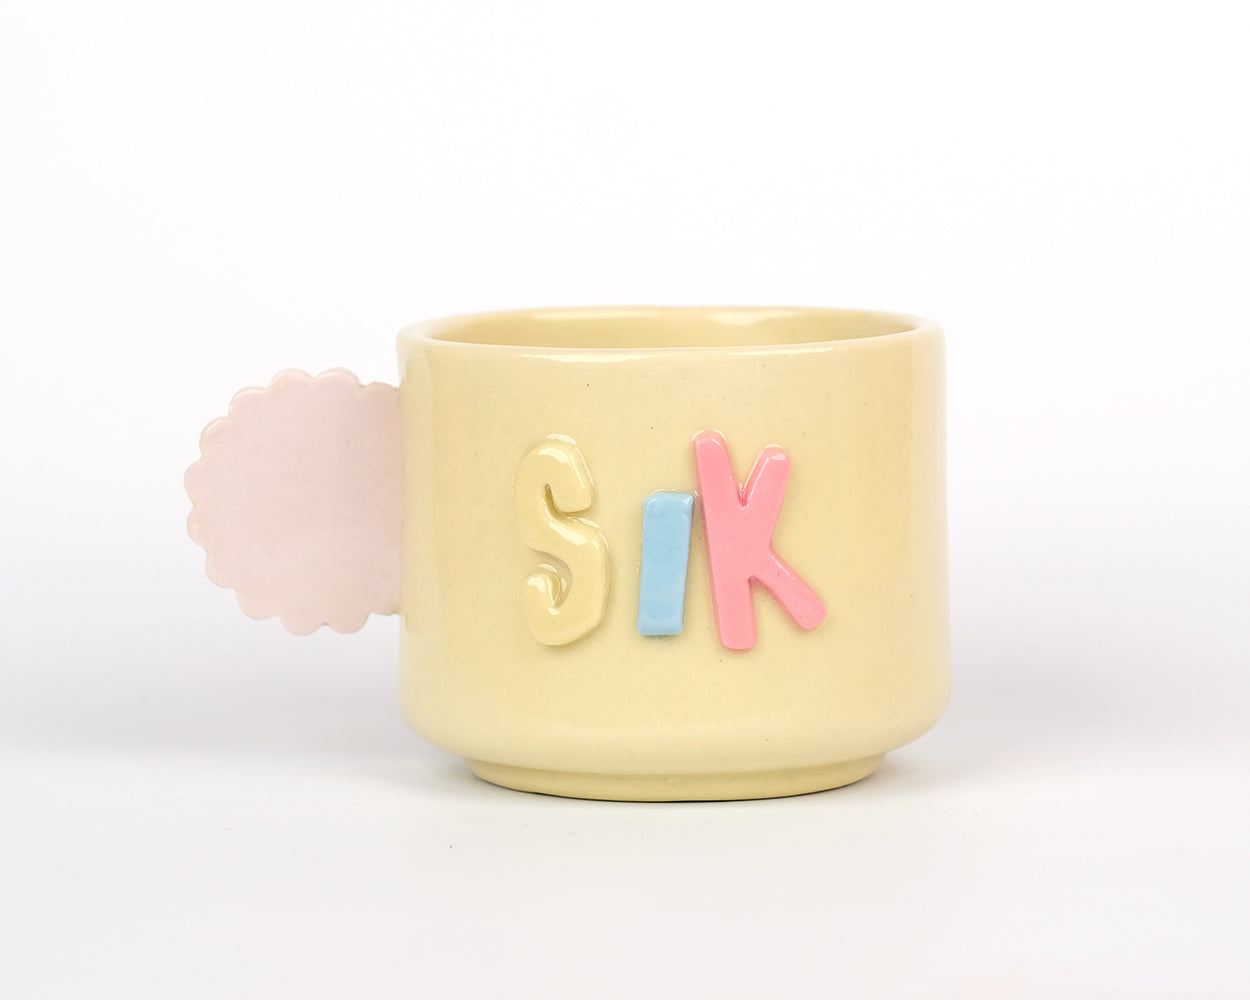 Sik - Teacup mug